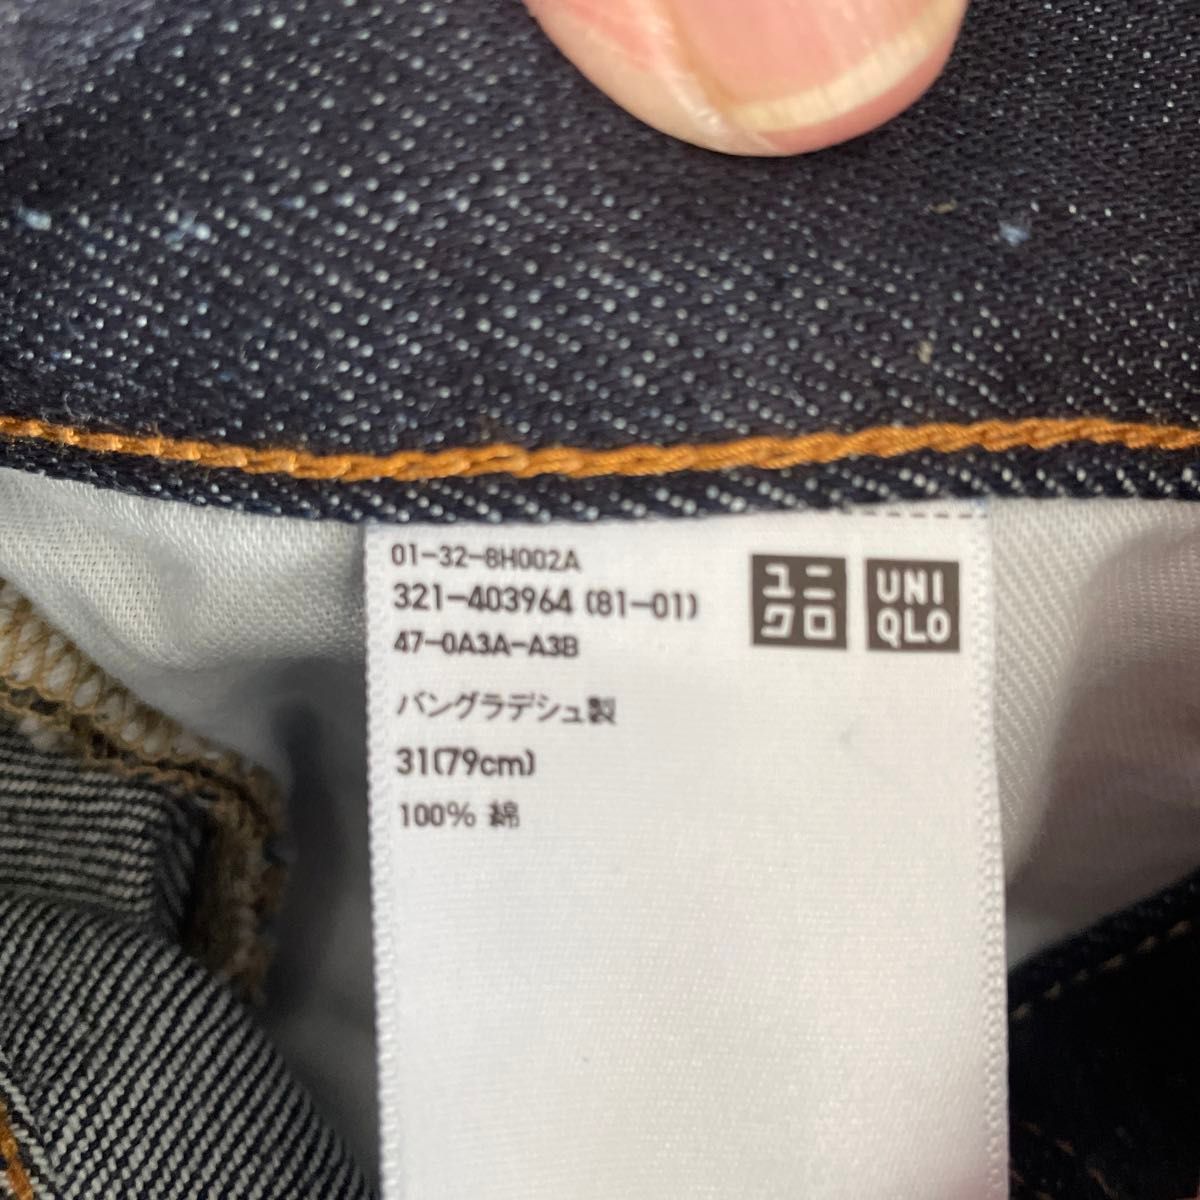 ユニクロメンズジーンズ未使用品31 (79cm)